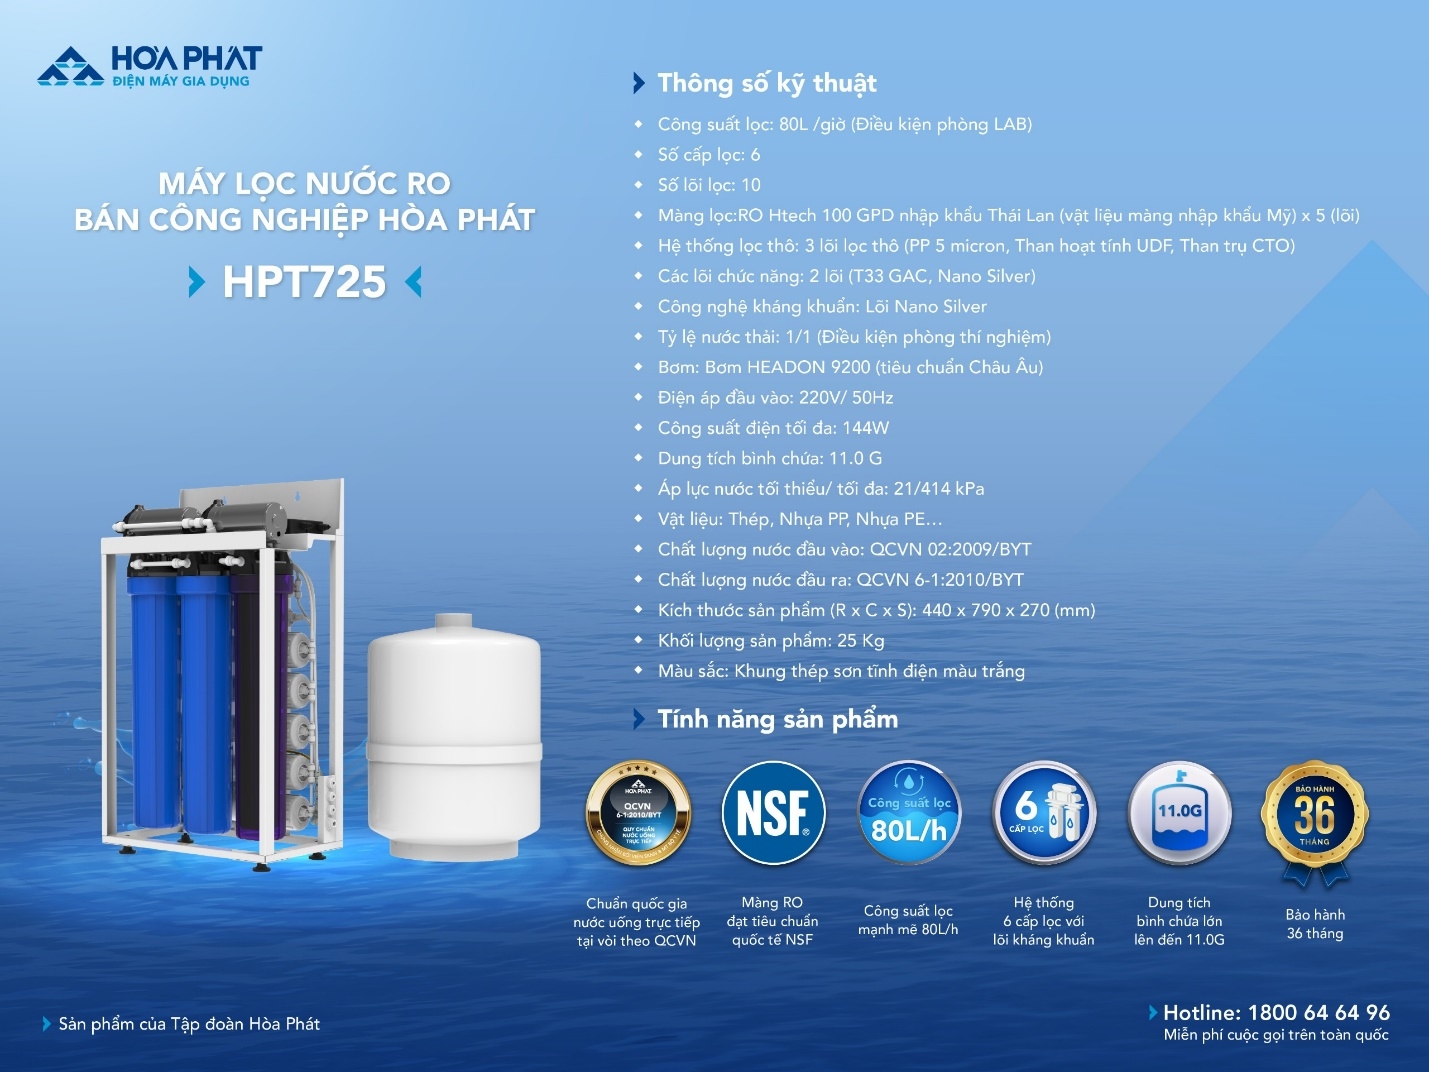 Điện máy gia dụng Hòa Phát ra mắt máy lọc nước RO bán công nghiệp